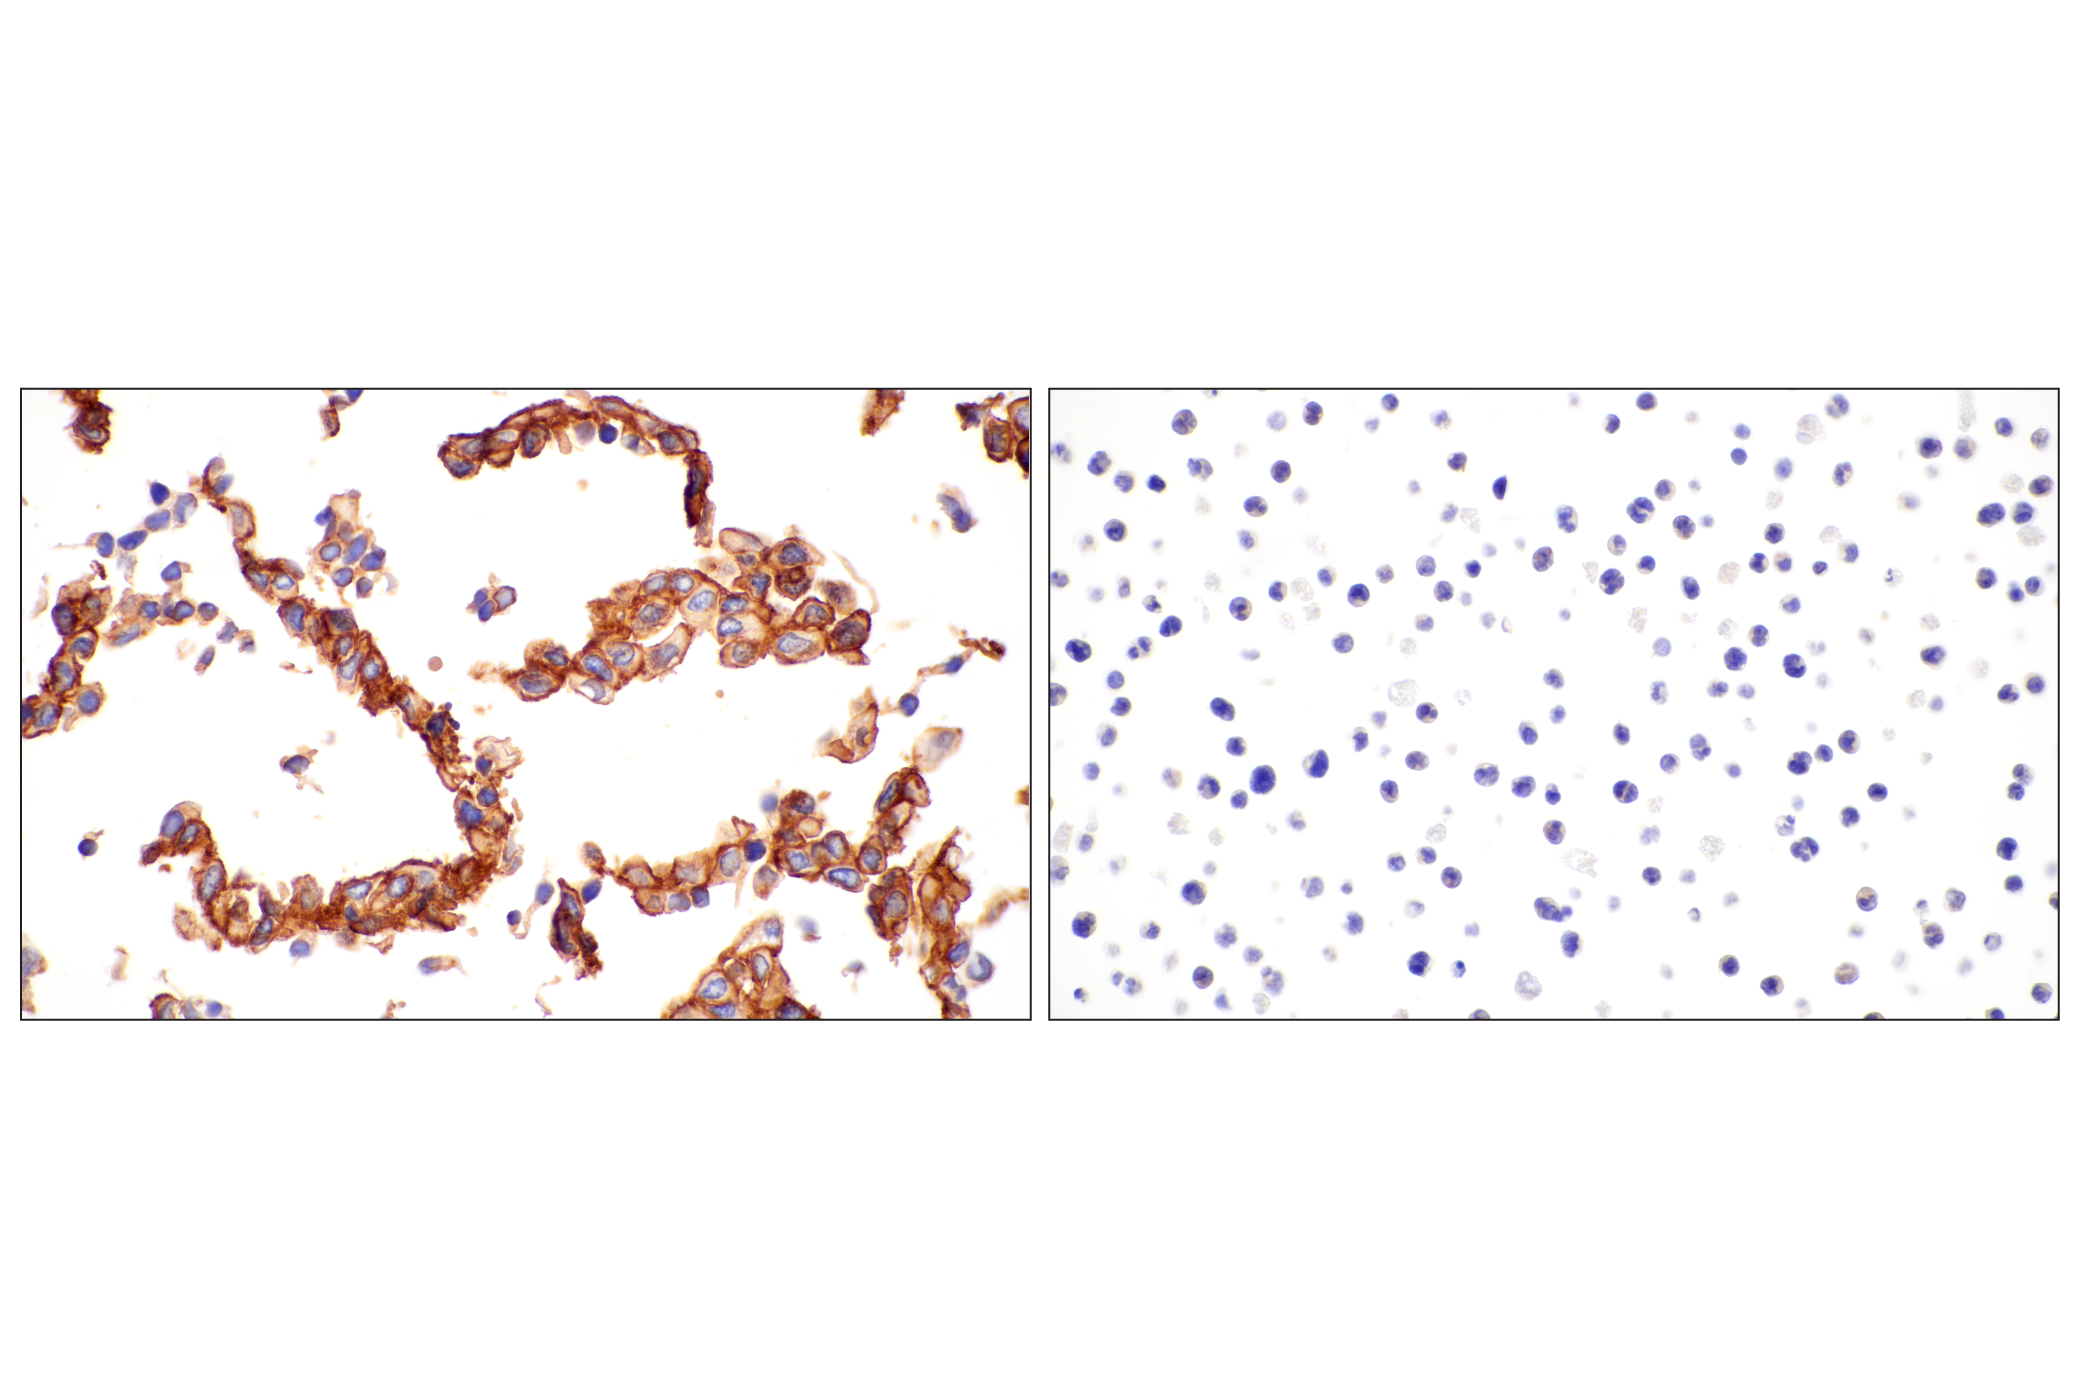  Image 39: Mouse Reactive Exosome Marker Antibody Sampler Kit